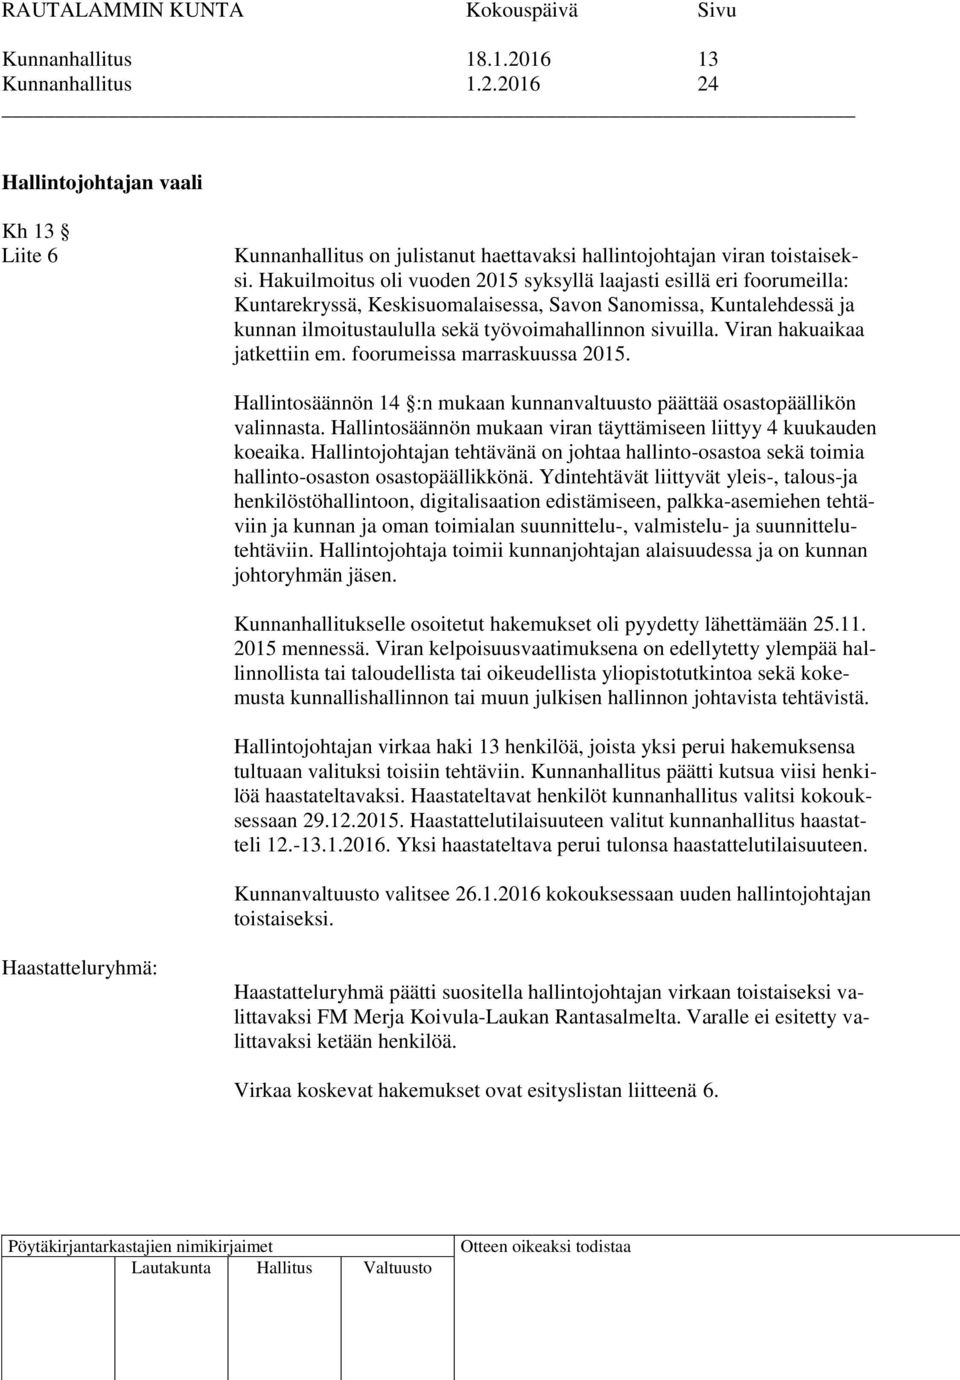 Viran hakuaikaa jatkettiin em. foorumeissa marraskuussa 2015. Hallintosäännön 14 :n mukaan kunnanvaltuusto päättää osastopäällikön valinnasta.